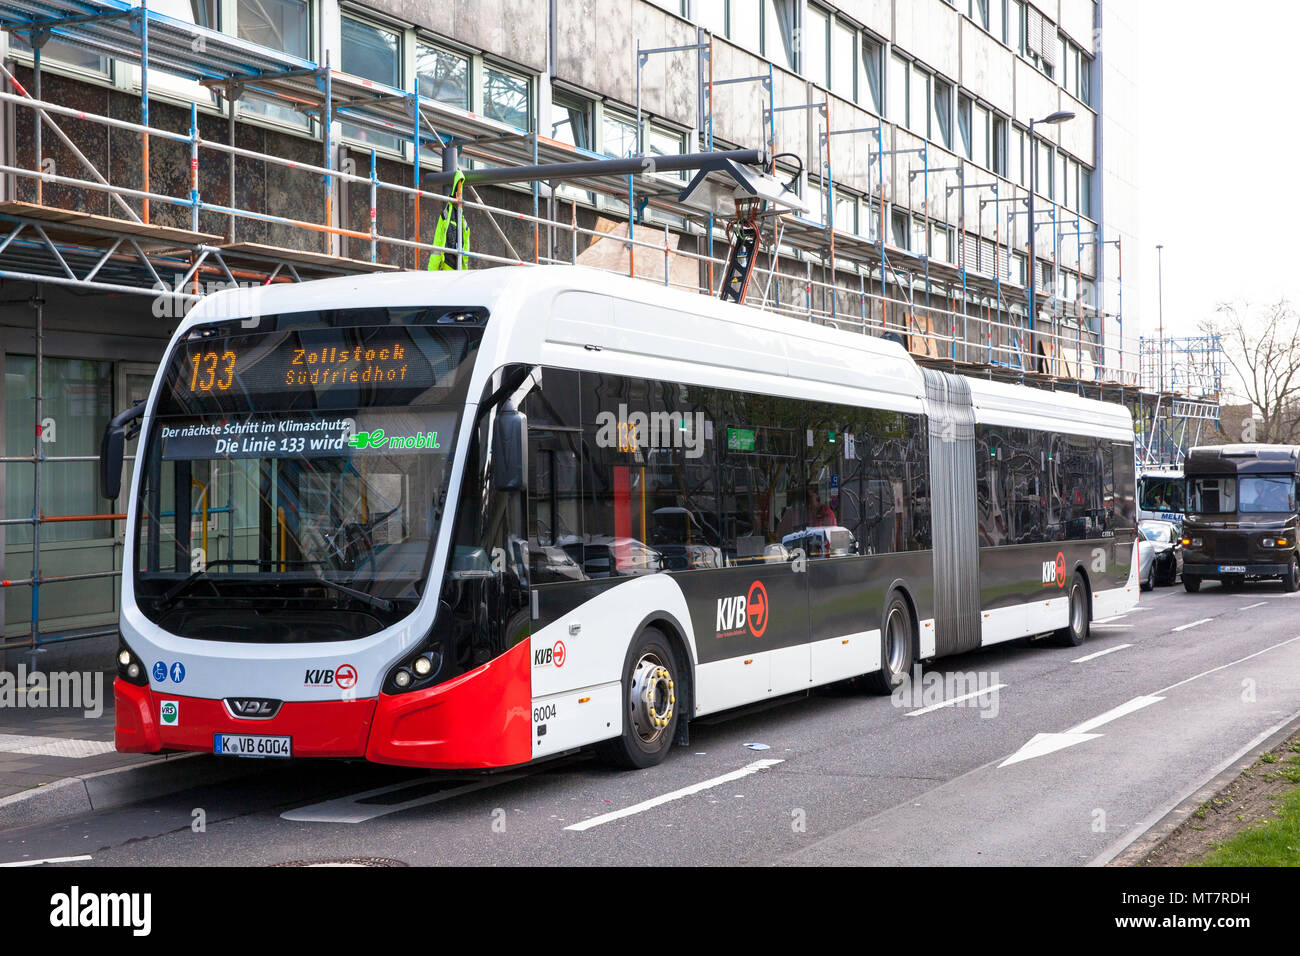 Electric Bus der Linie 133 an eine Ladestation am Breslauer Platz, Köln, Deutschland. Elektrobus der Linie 133 ein einer Ladestation bin Breslauer P Stockfoto